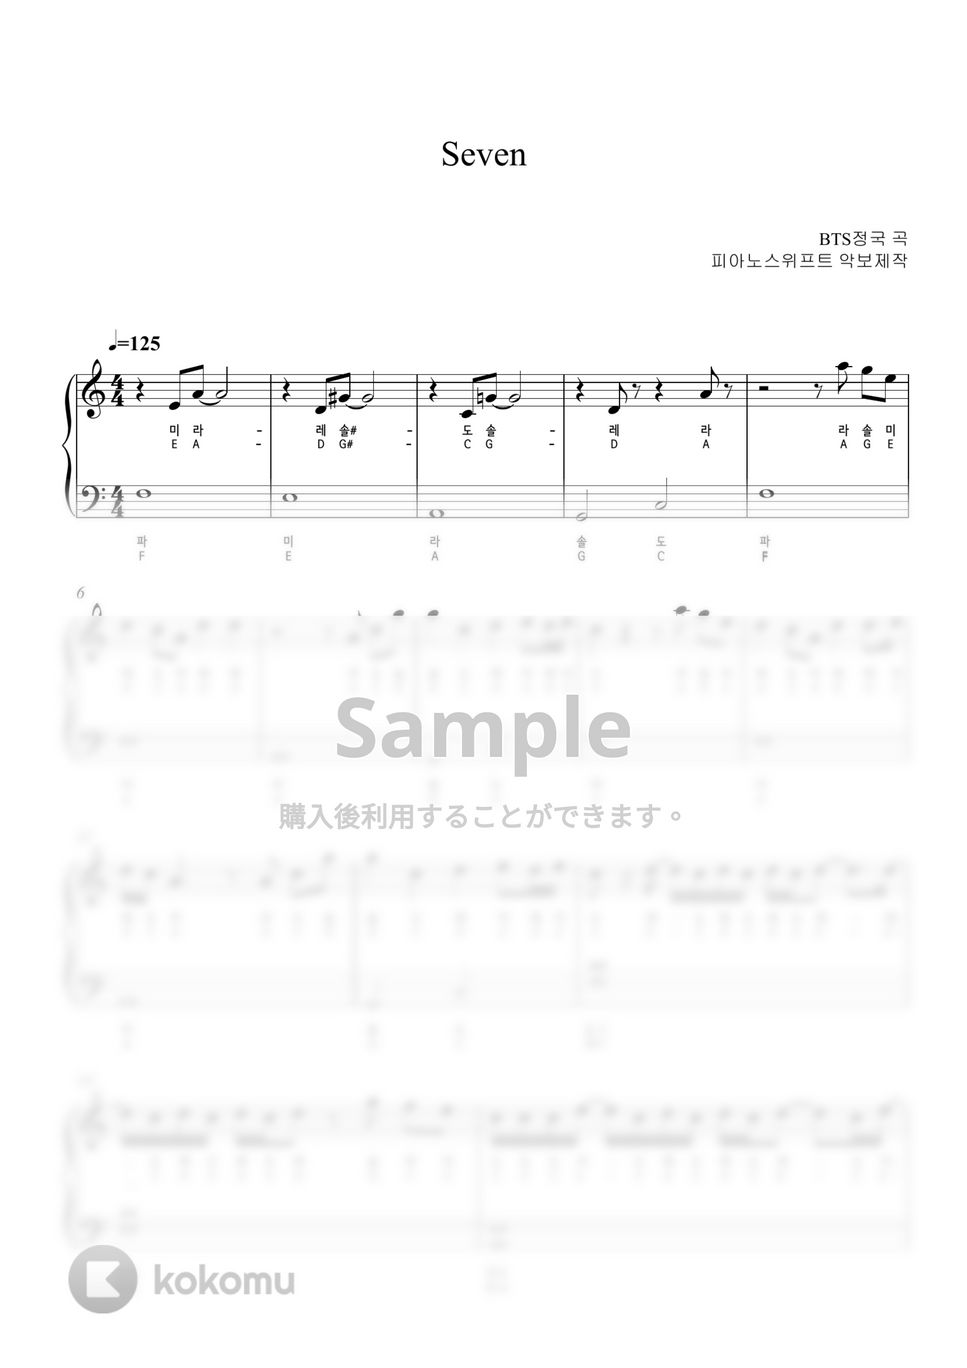 ジョングク (BTS) - Seven (with pitch names) by PianoSwift